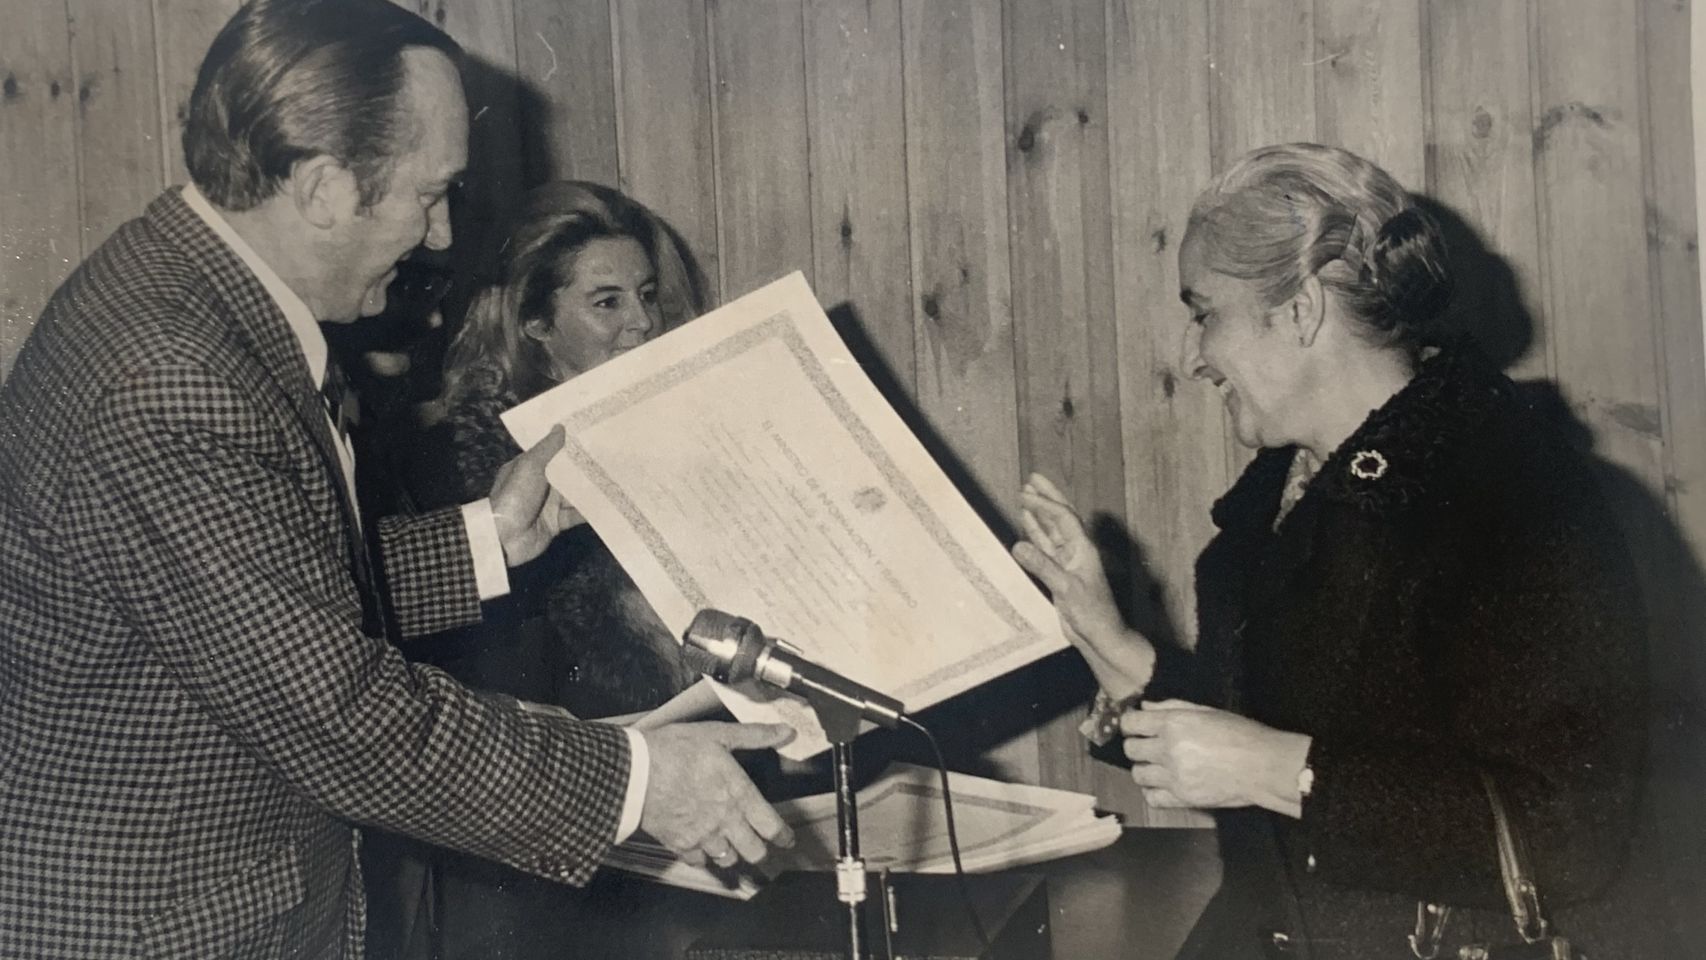 Rafaela recibiendo un Diploma del Ministerio de Información y Turismo. Cortesía de Radio Coruña